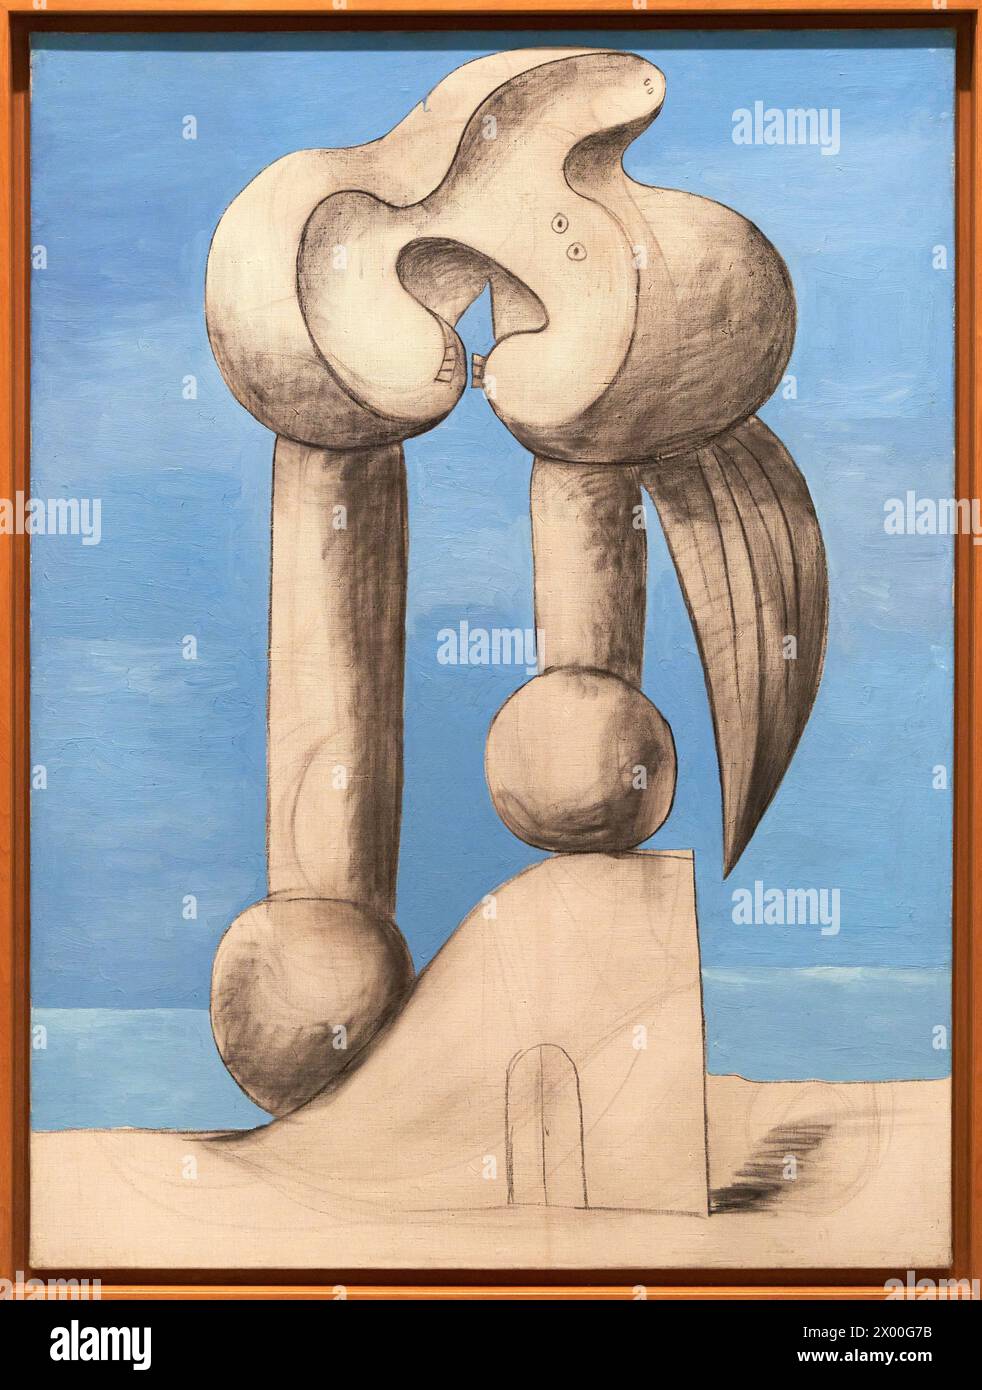 Figures près de la mer I, 1932, Pablo Picasso, Musée Reina Sofia, Madrid, Espagne, Europe. Banque D'Images